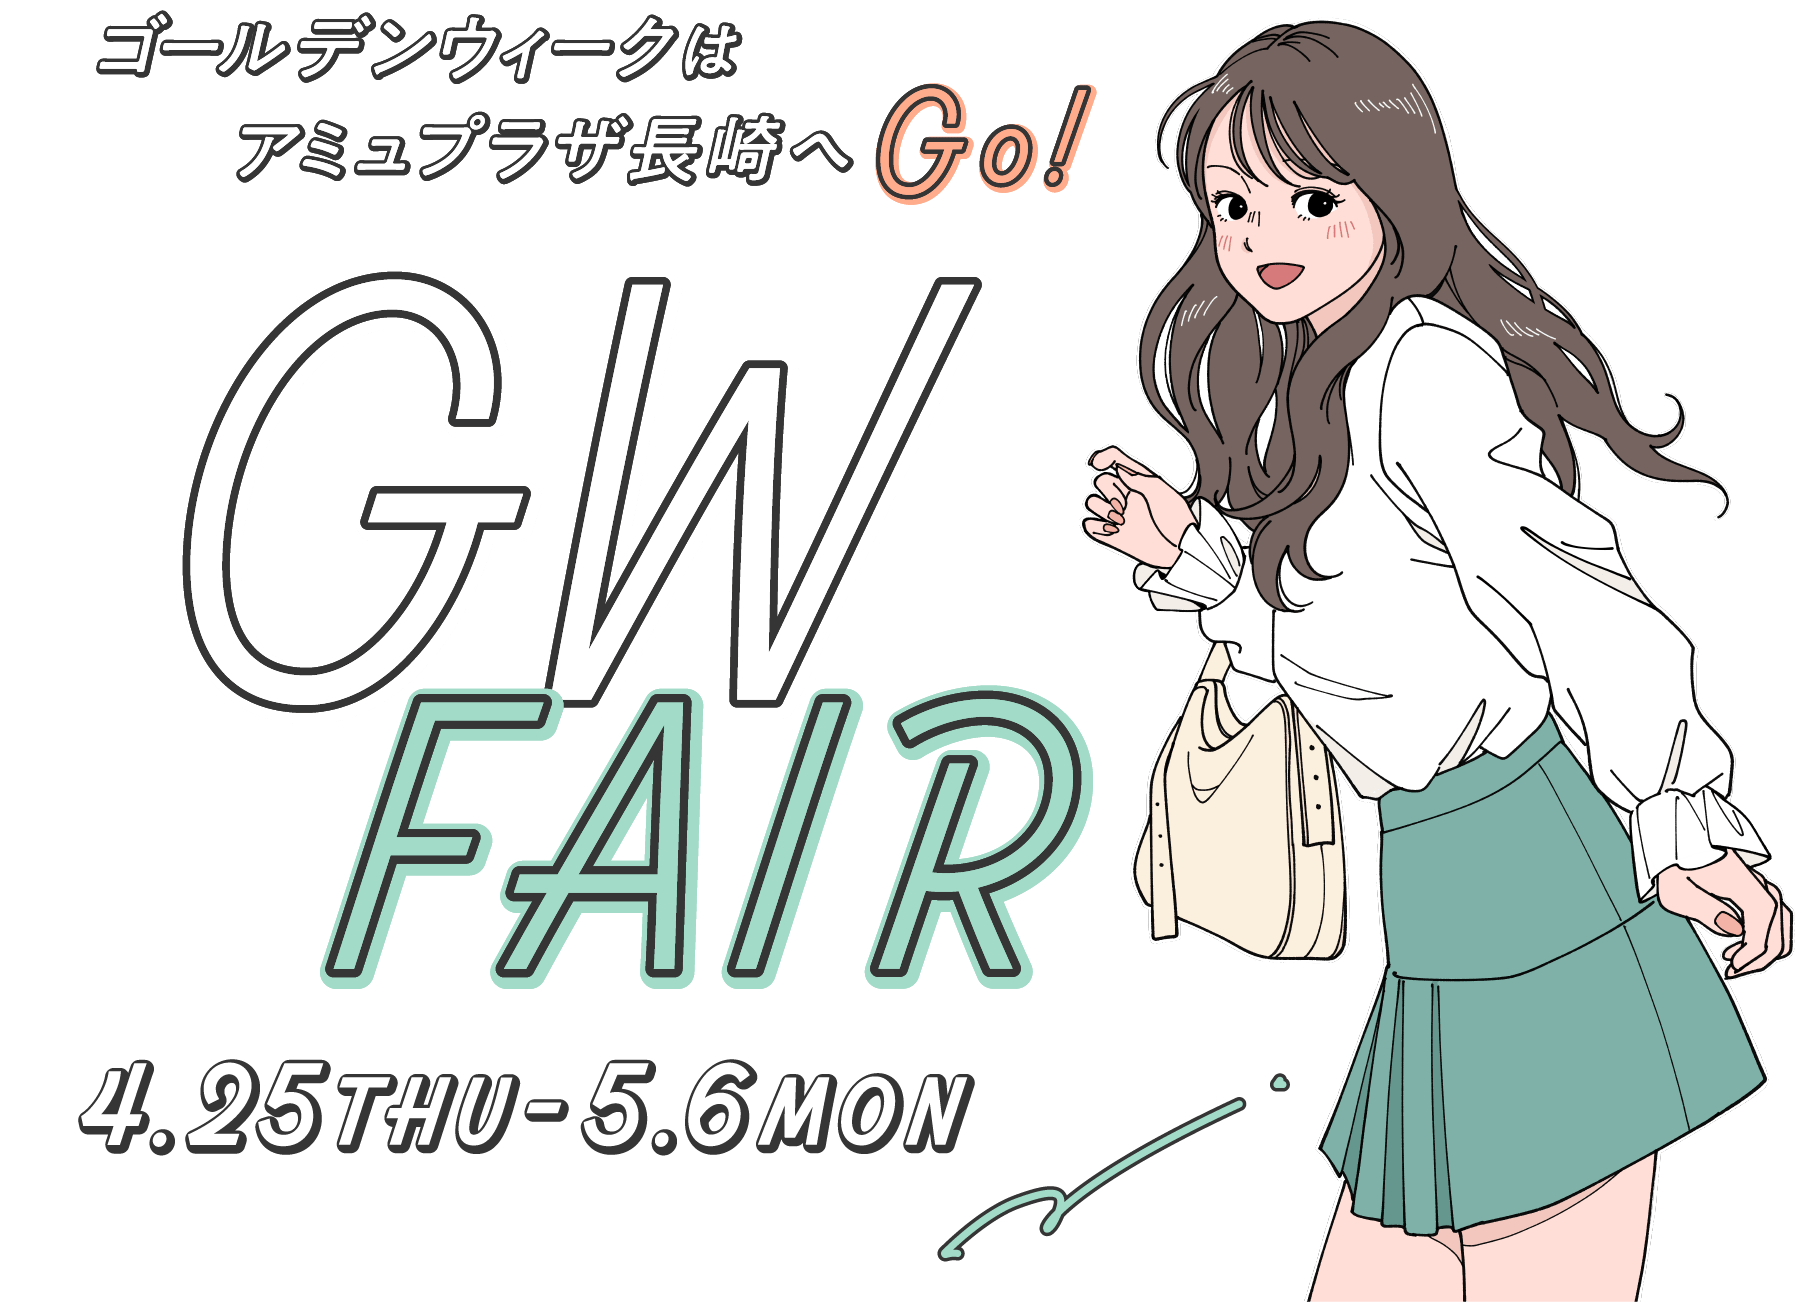 GW FAIR - 4.25～5.6 - ゴールデンウィークはアミュプラザ長崎へGo!